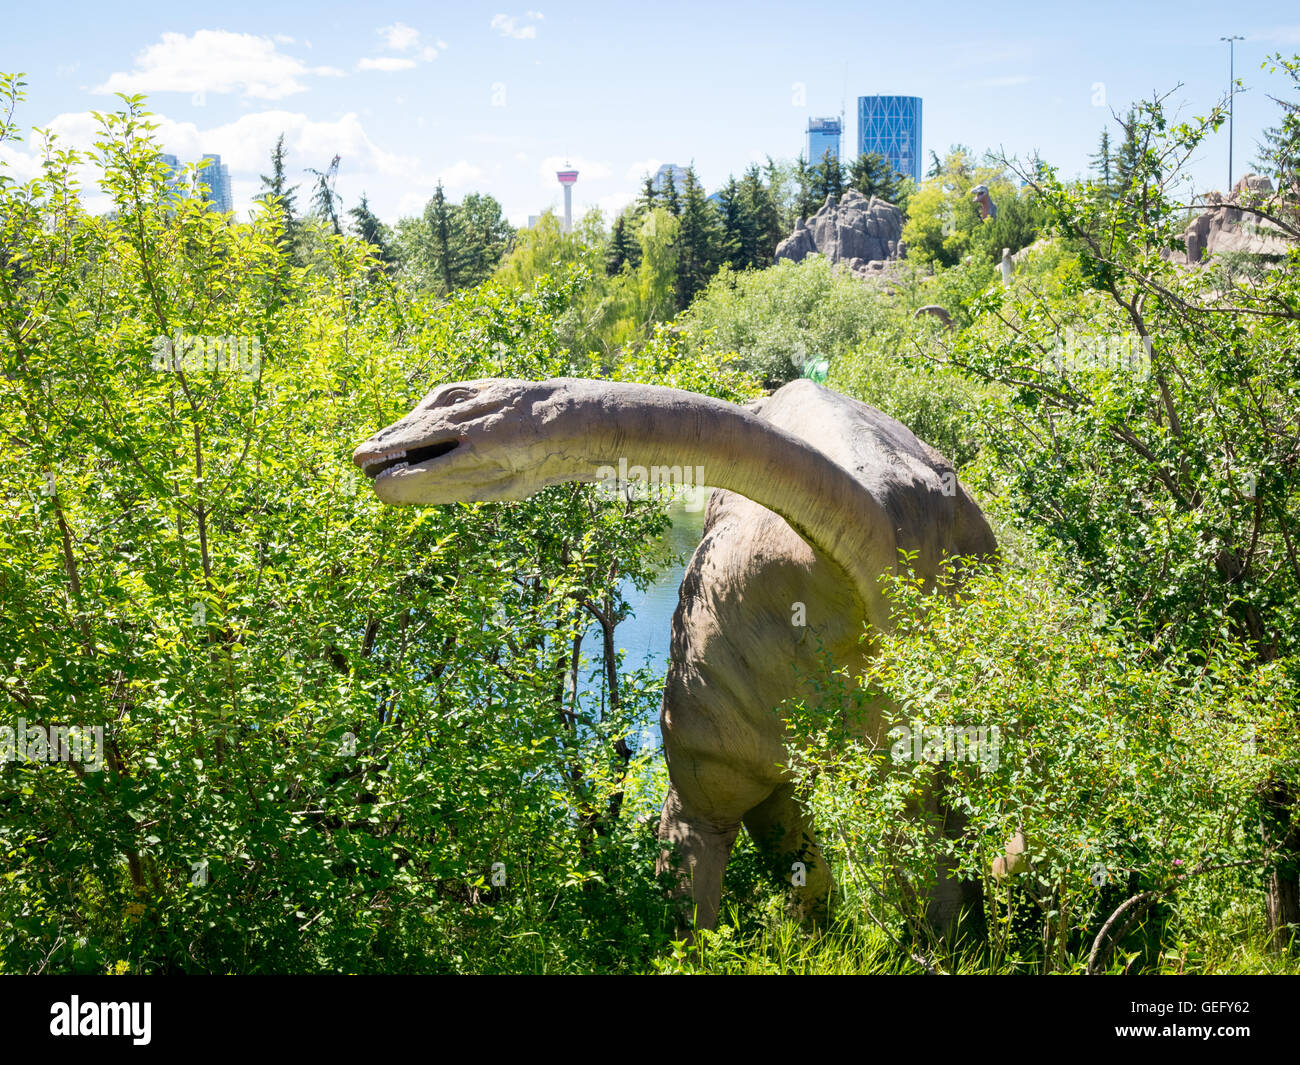 Ein Modell-Nachbau des ein Apatosaurus, eine Gattung der Sauropoden Dinosaurier. Zoo von Calgary, Calgary, Alberta, Kanada. Stockfoto